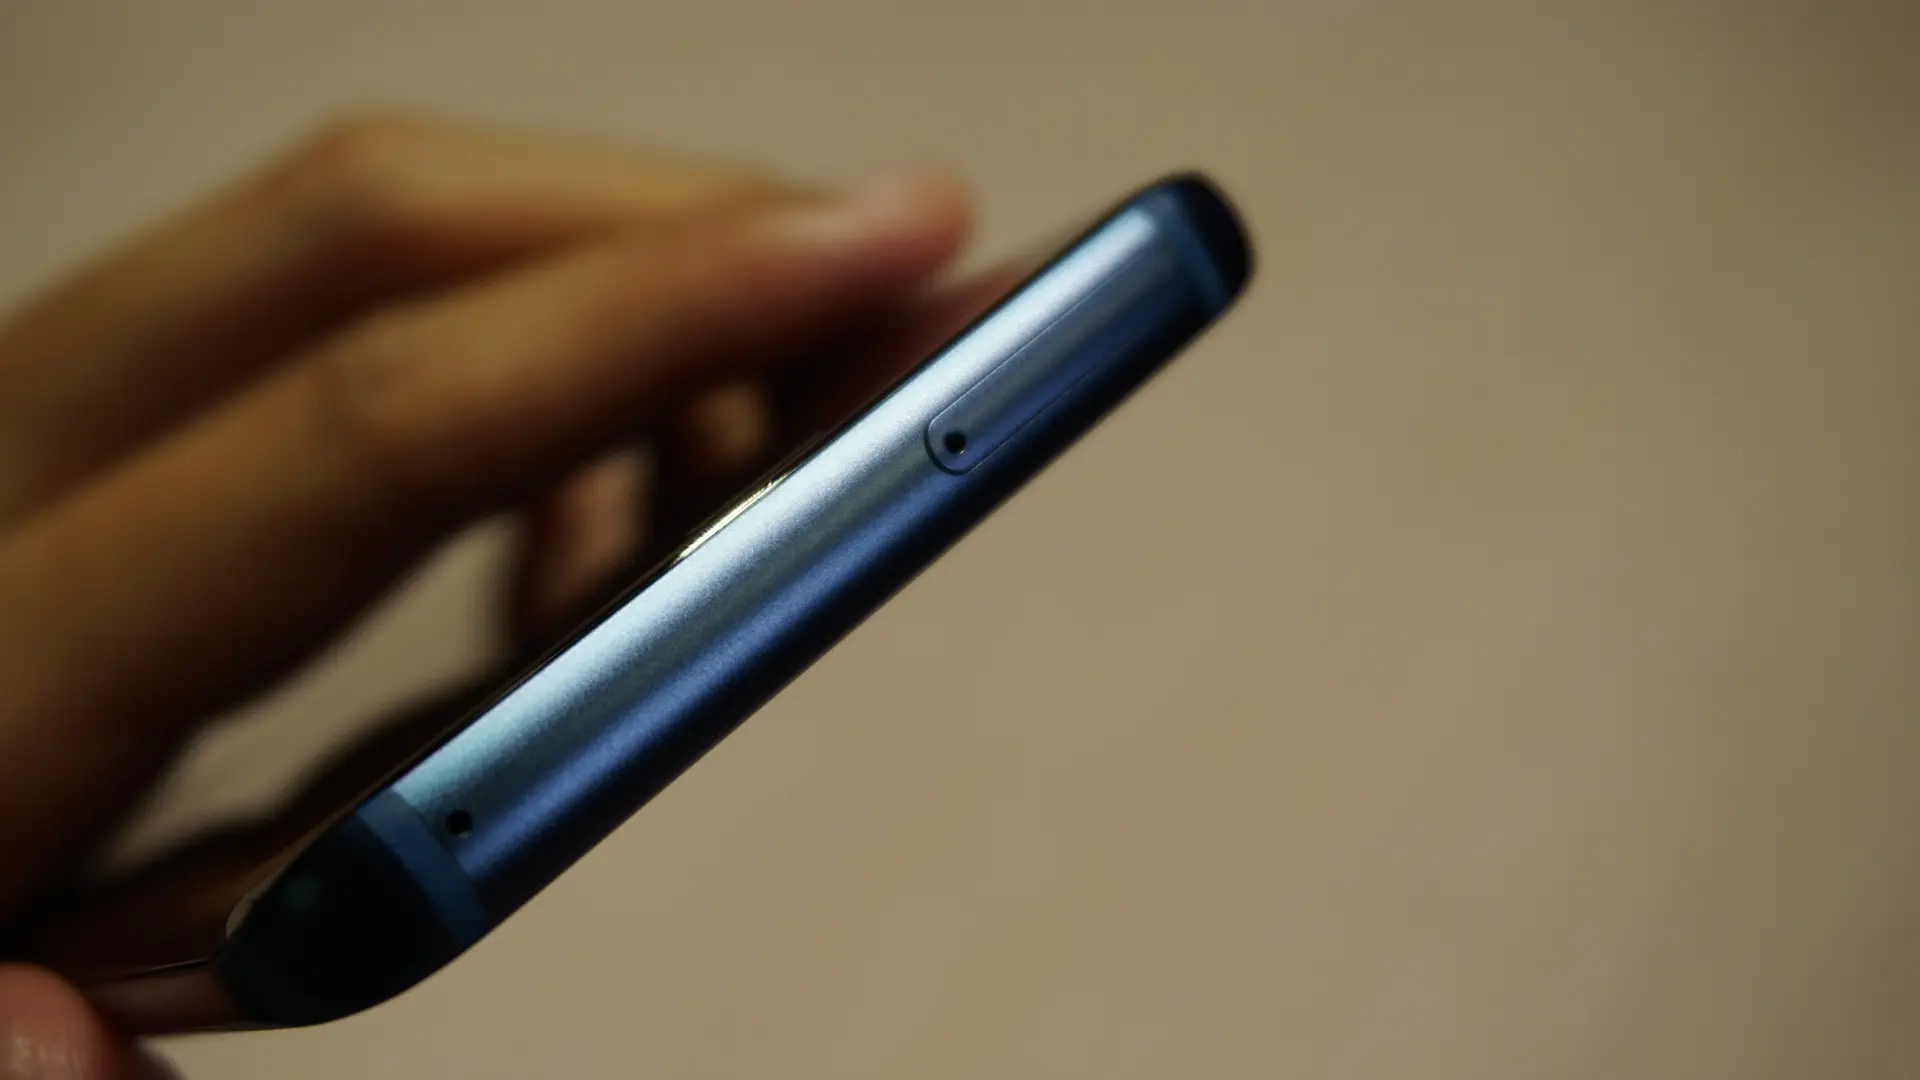 SIM card ejector pada Samsung Galaxy S9 (Liputan6.com/ Agustin Setyo W)